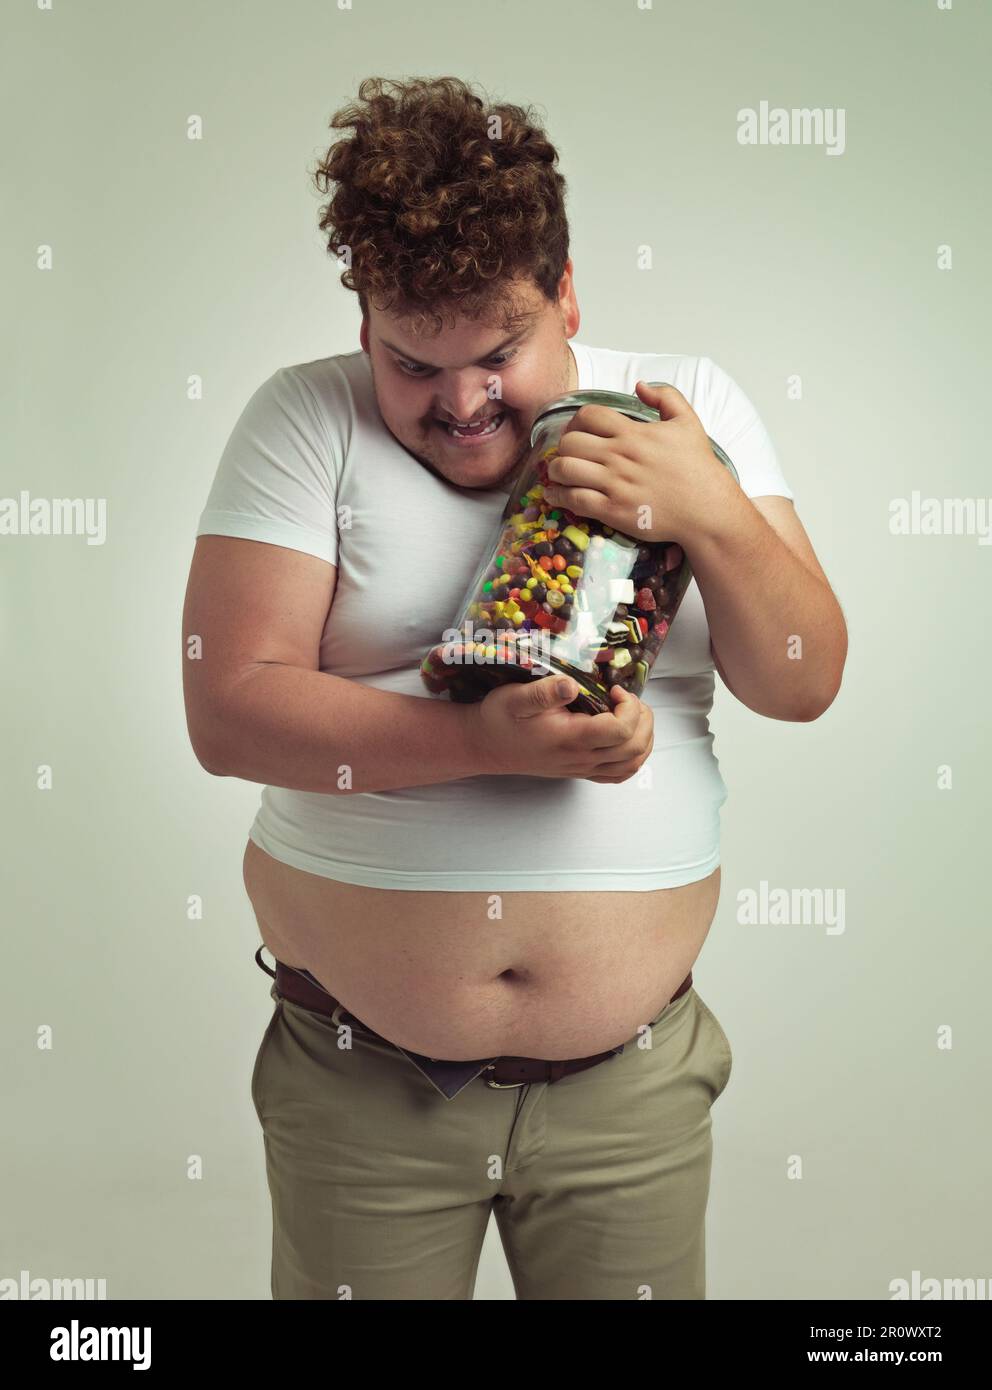 Mein Schatz. Ein übergewichtiger Mann, der sein Leben lang an seinen Süßigkeiten festhält. Stockfoto